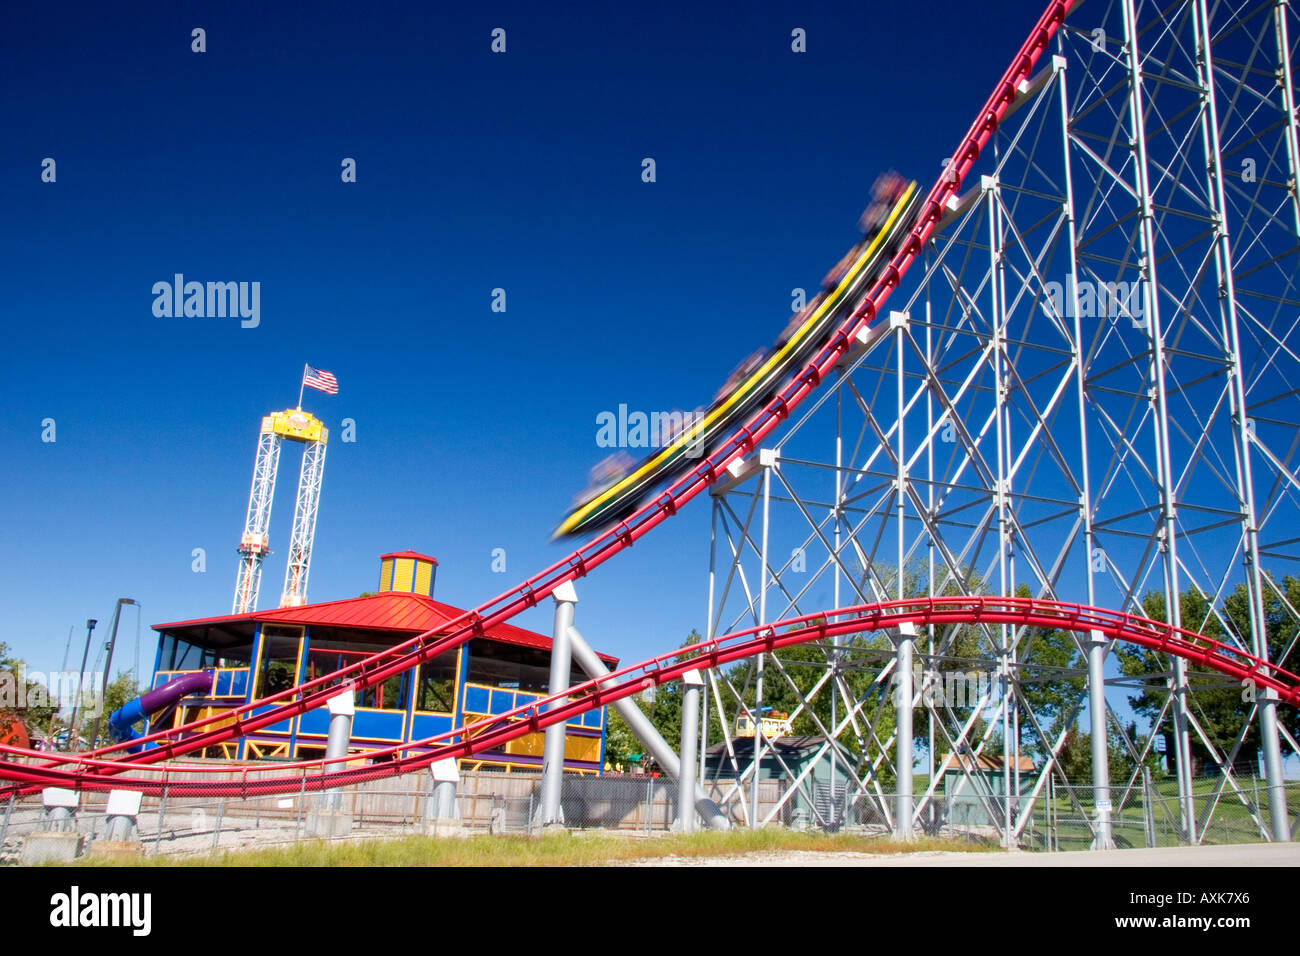 Le Mamba roller coaster en mouvement à Worlds of fun de Kansas City Missouri Banque D'Images